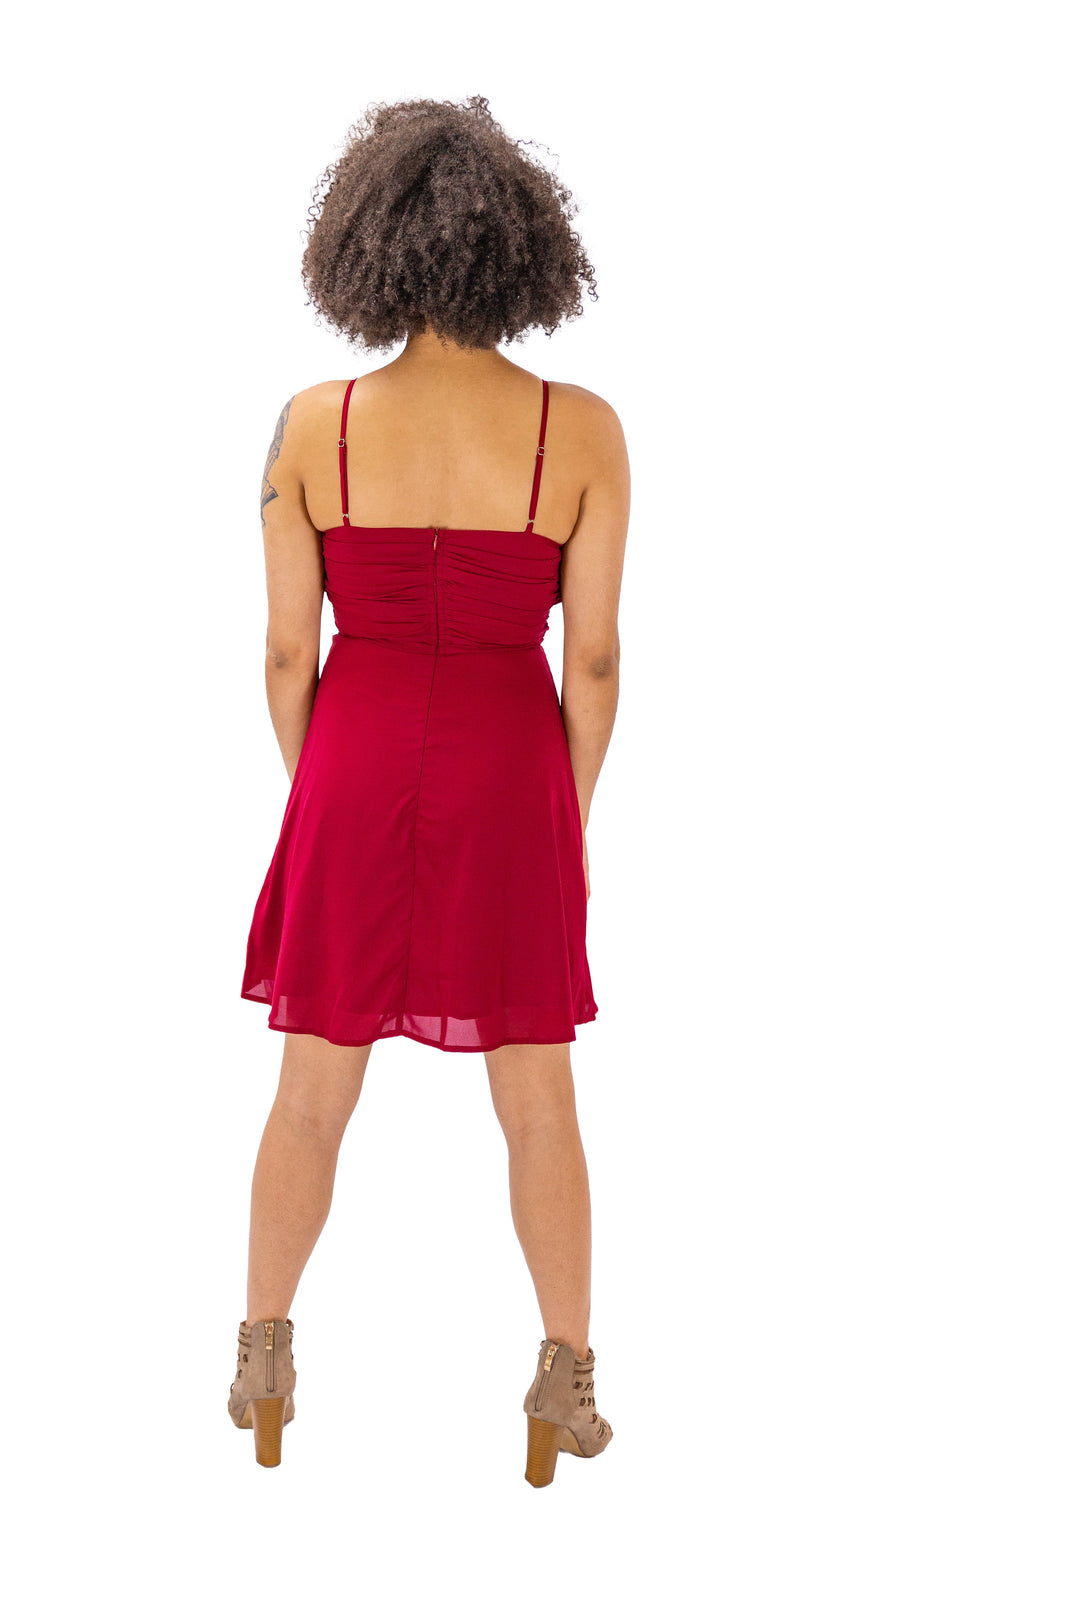 Ruby Radiance: Elegant V-Neck Strappy Cocktail Dress